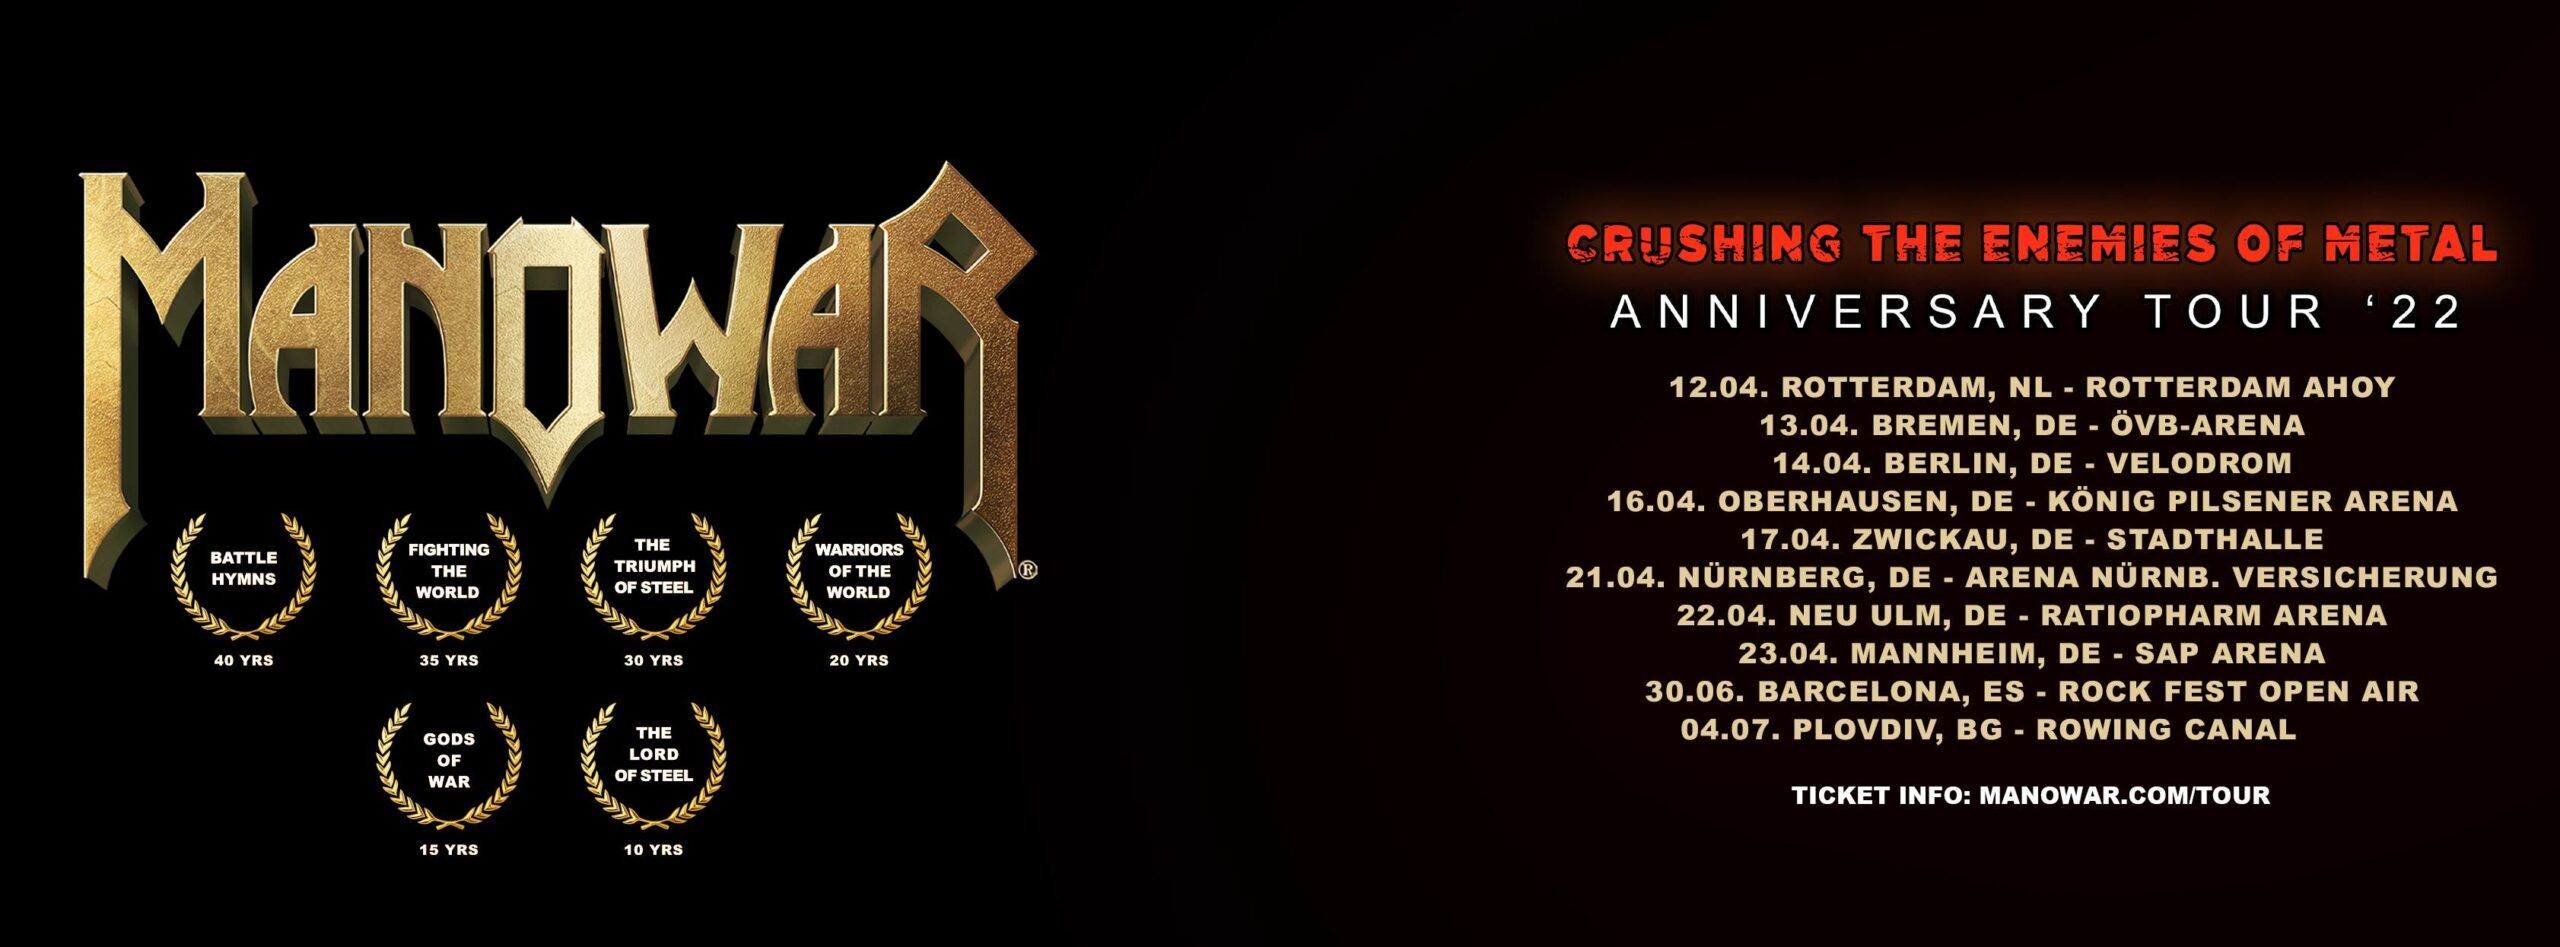 "Crushing The Enemies Of Metal Anniversary Tour '22" angekündigt